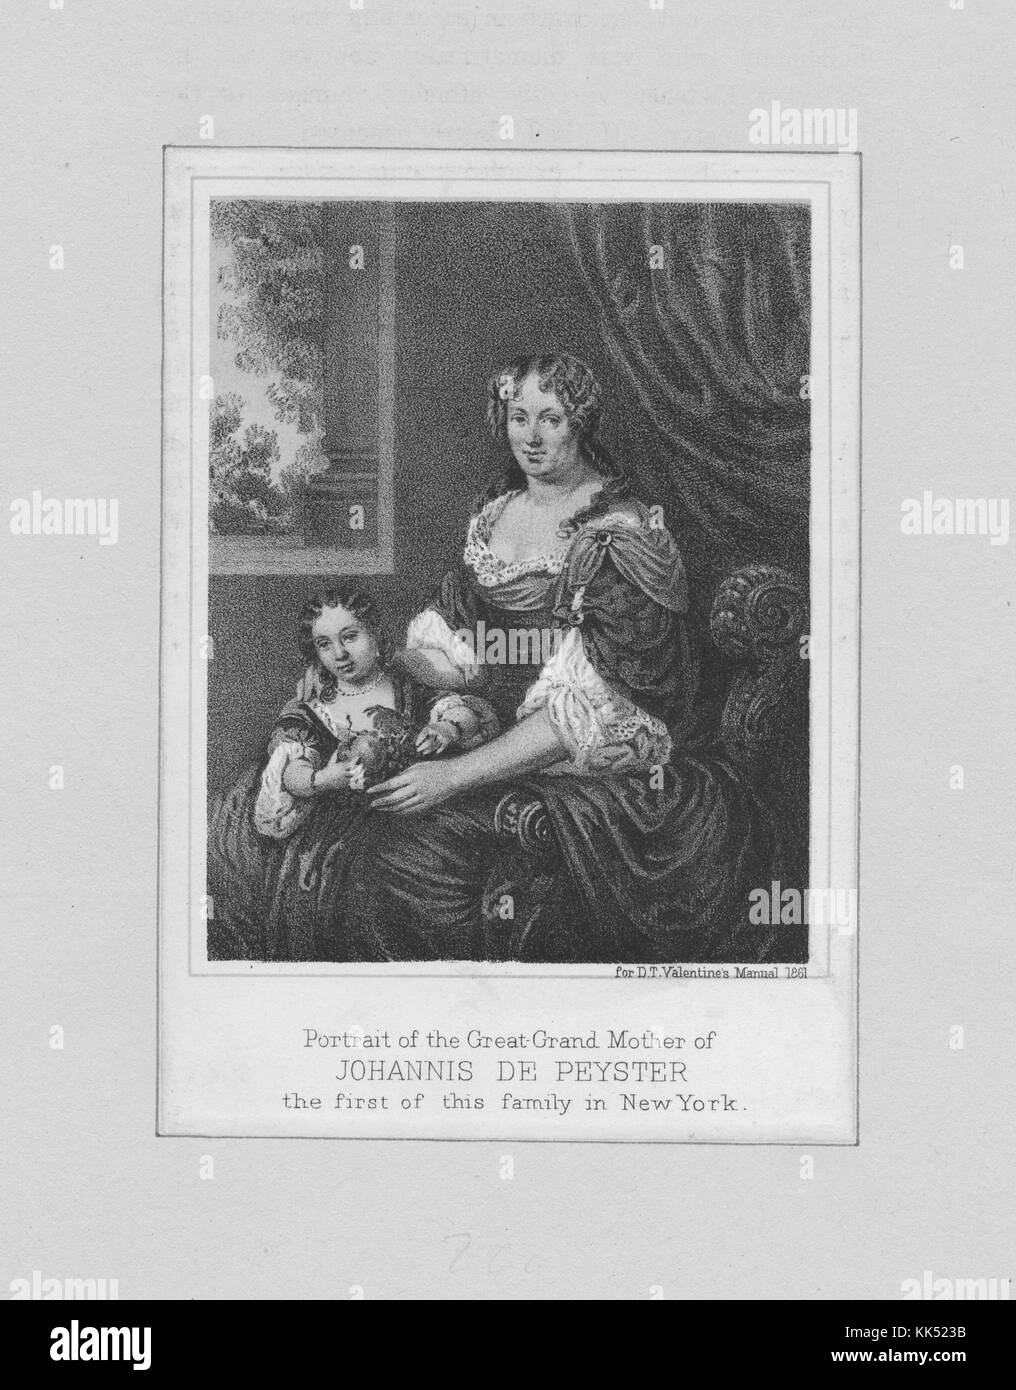 Ein Kupferstich aus einem Porträt der Urgroßmutter von Johannes de Peyster, er war der 23. Bürgermeister von New York City, sein Bruder und sein Schwager waren beide Bürgermeister von New York City, sein Sohn war Bürgermeister von Albany. seine Urgroßmutter und ein junges Mädchen erscheinen auf dem Porträt in identischen, fließenden Kleidern und mit identisch gestylten Haaren, 1750. Aus der New York Public Library. Stockfoto